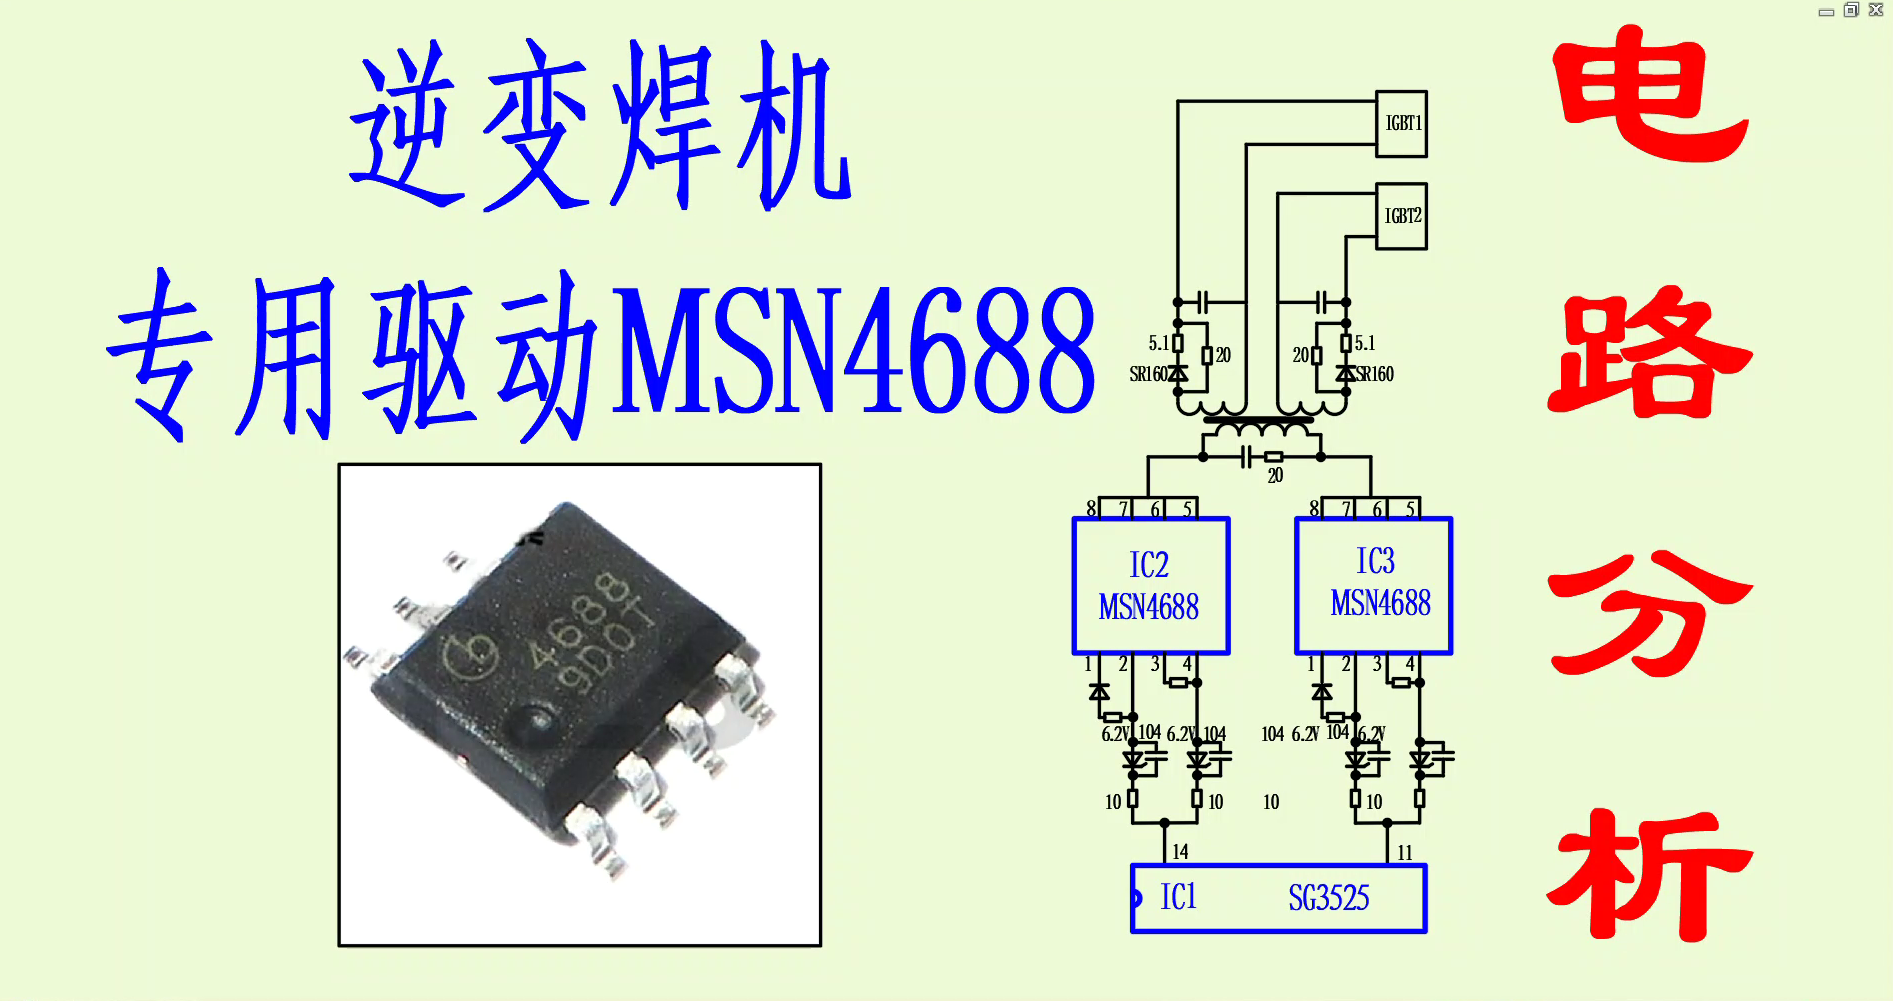 逆变焊机专用驱动芯片MSN4688电路分析